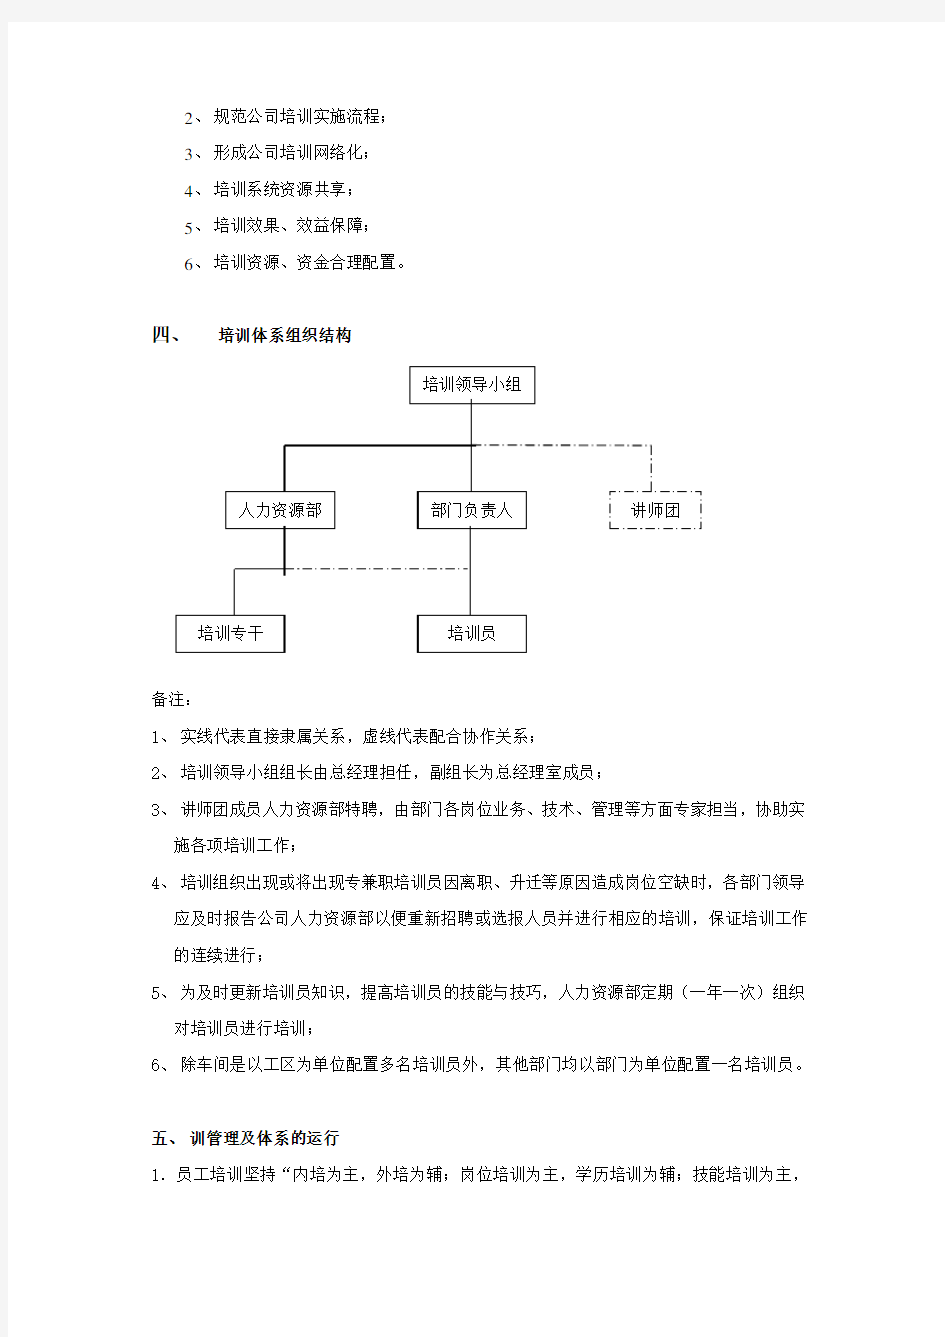 培训管理体系构建方案(1).doc